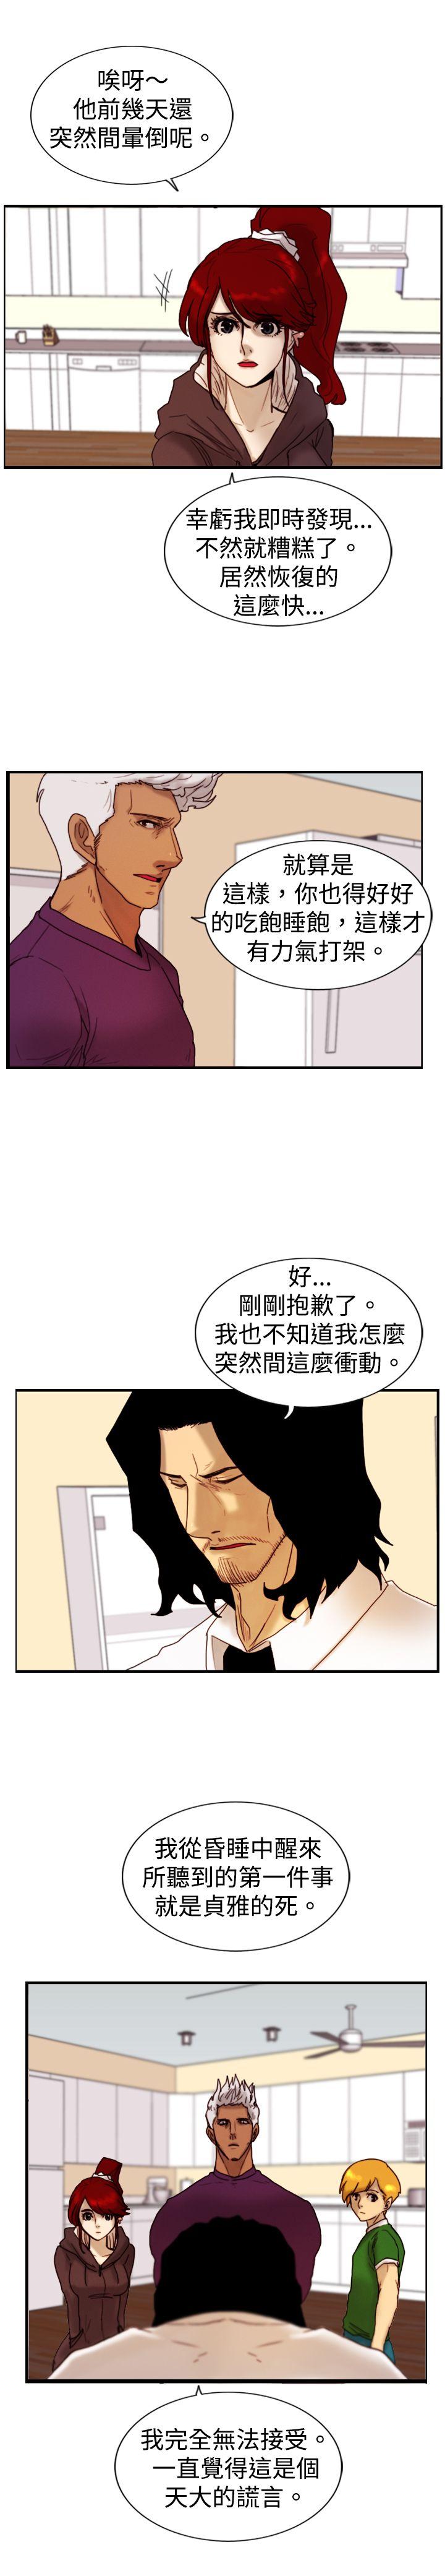 韩国污漫画 覺醒(完結) 第11话证据 23